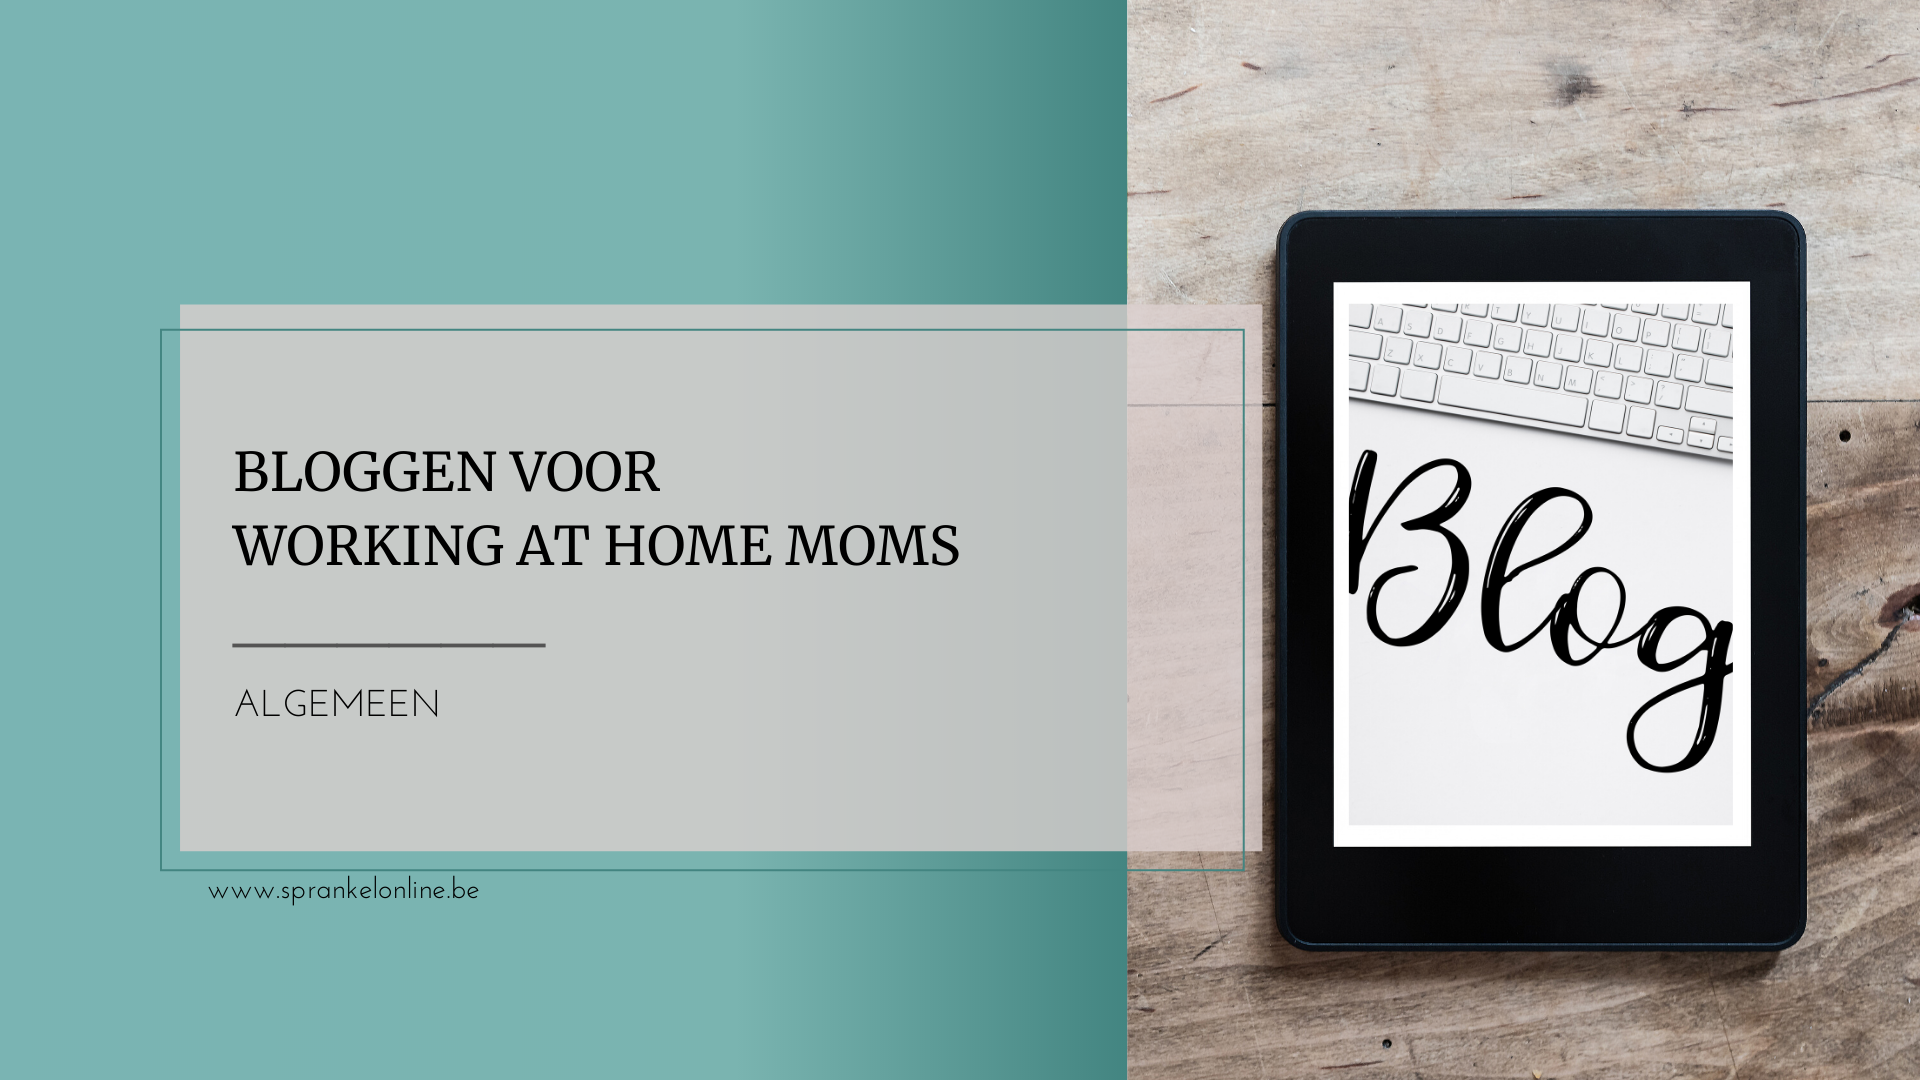 bloggen voor working at home moms